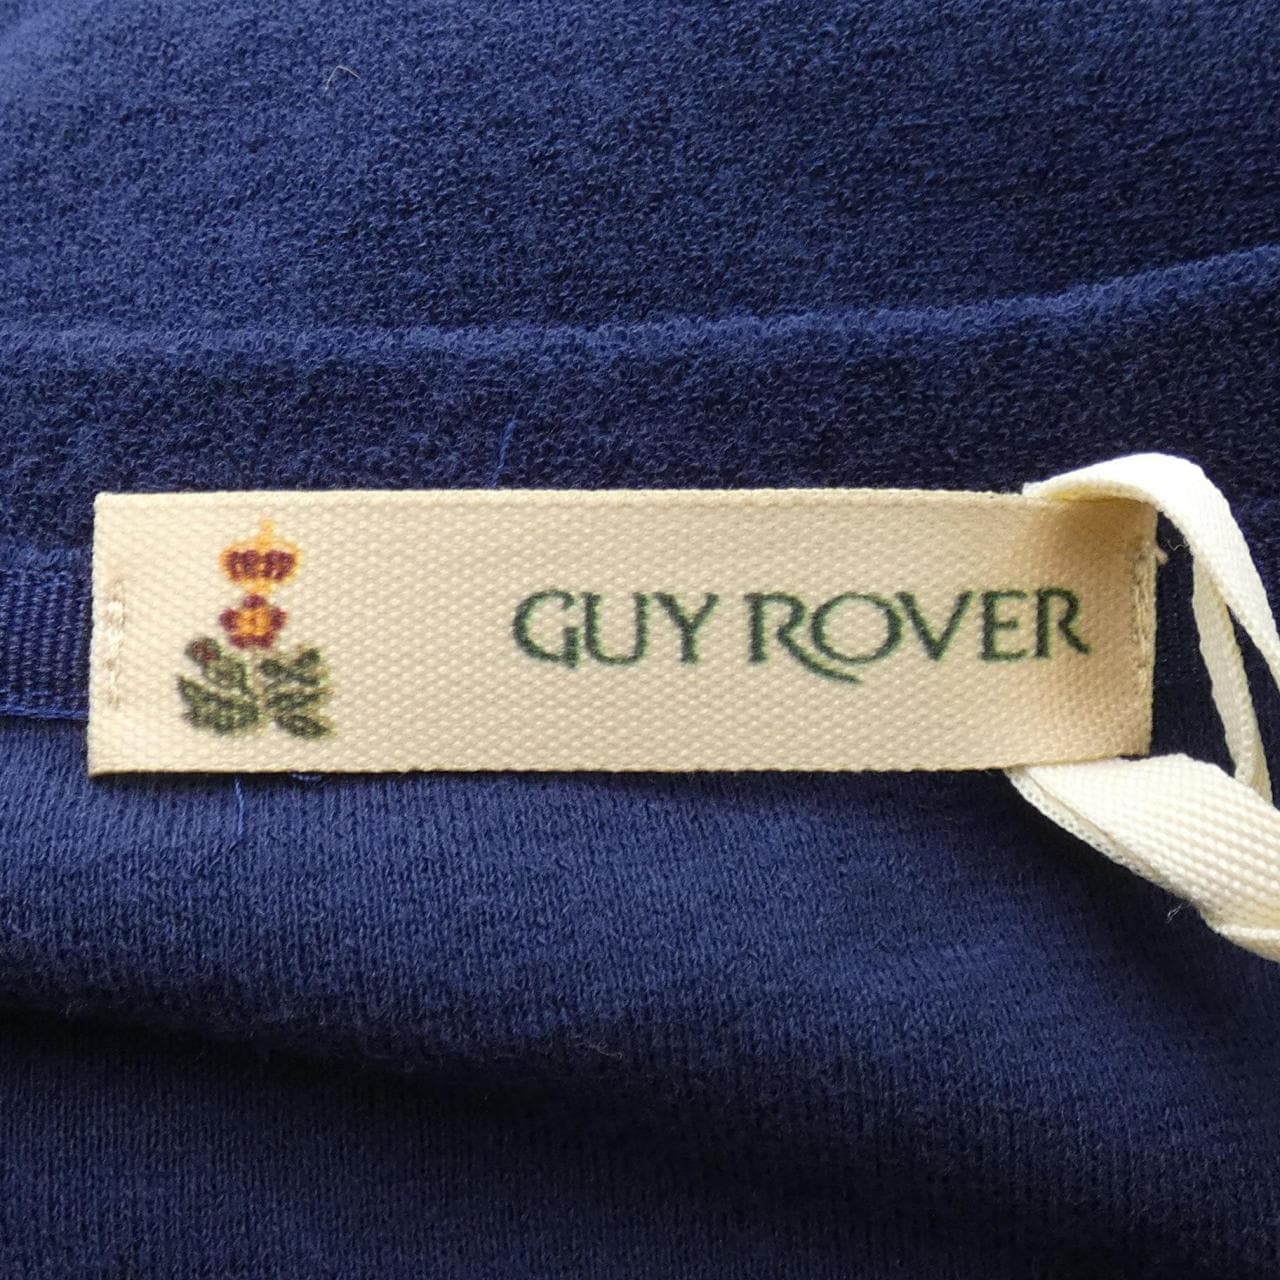 ギローバー GUY ROVER Tシャツ